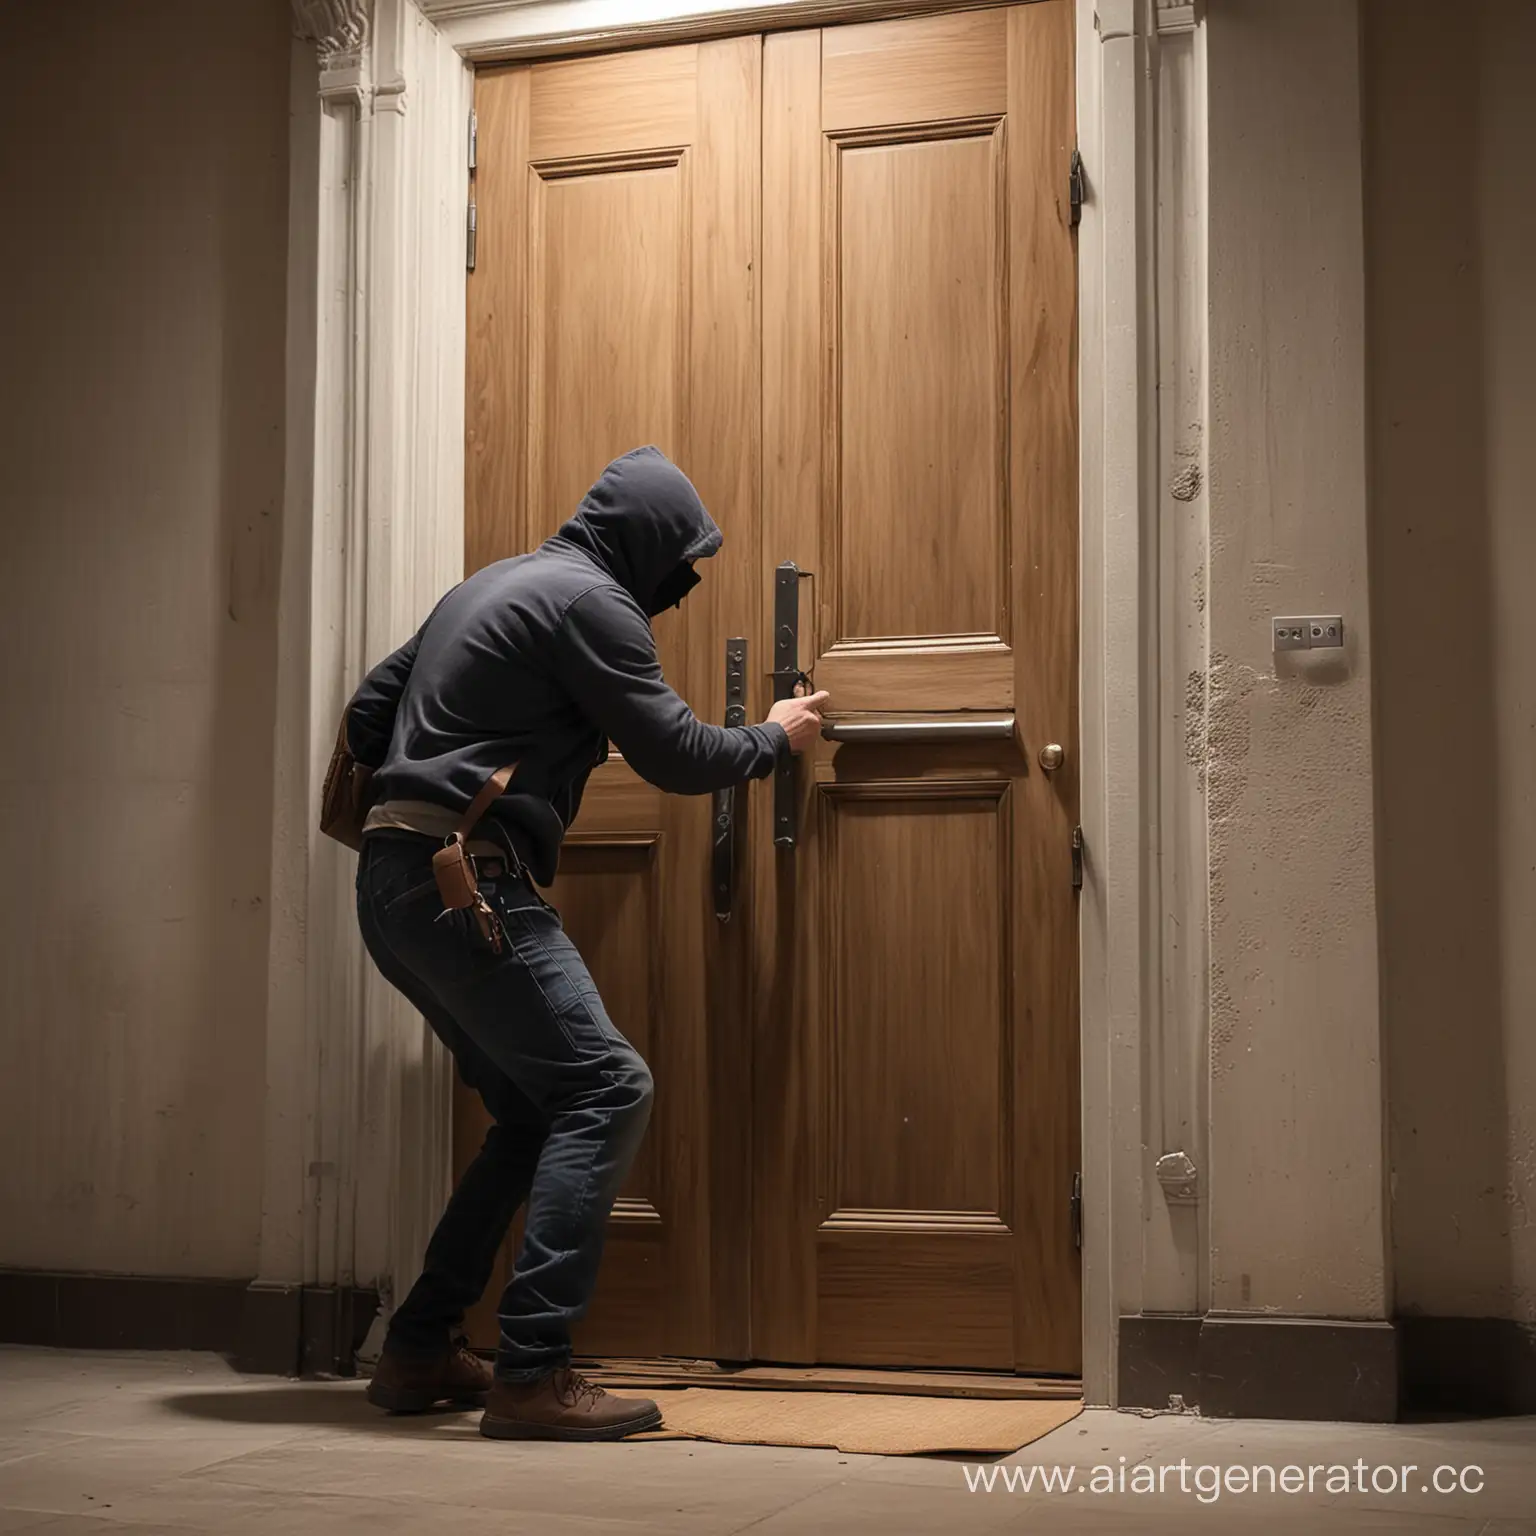 грабители пытаются взломать дверь, невидимая защита им мешает